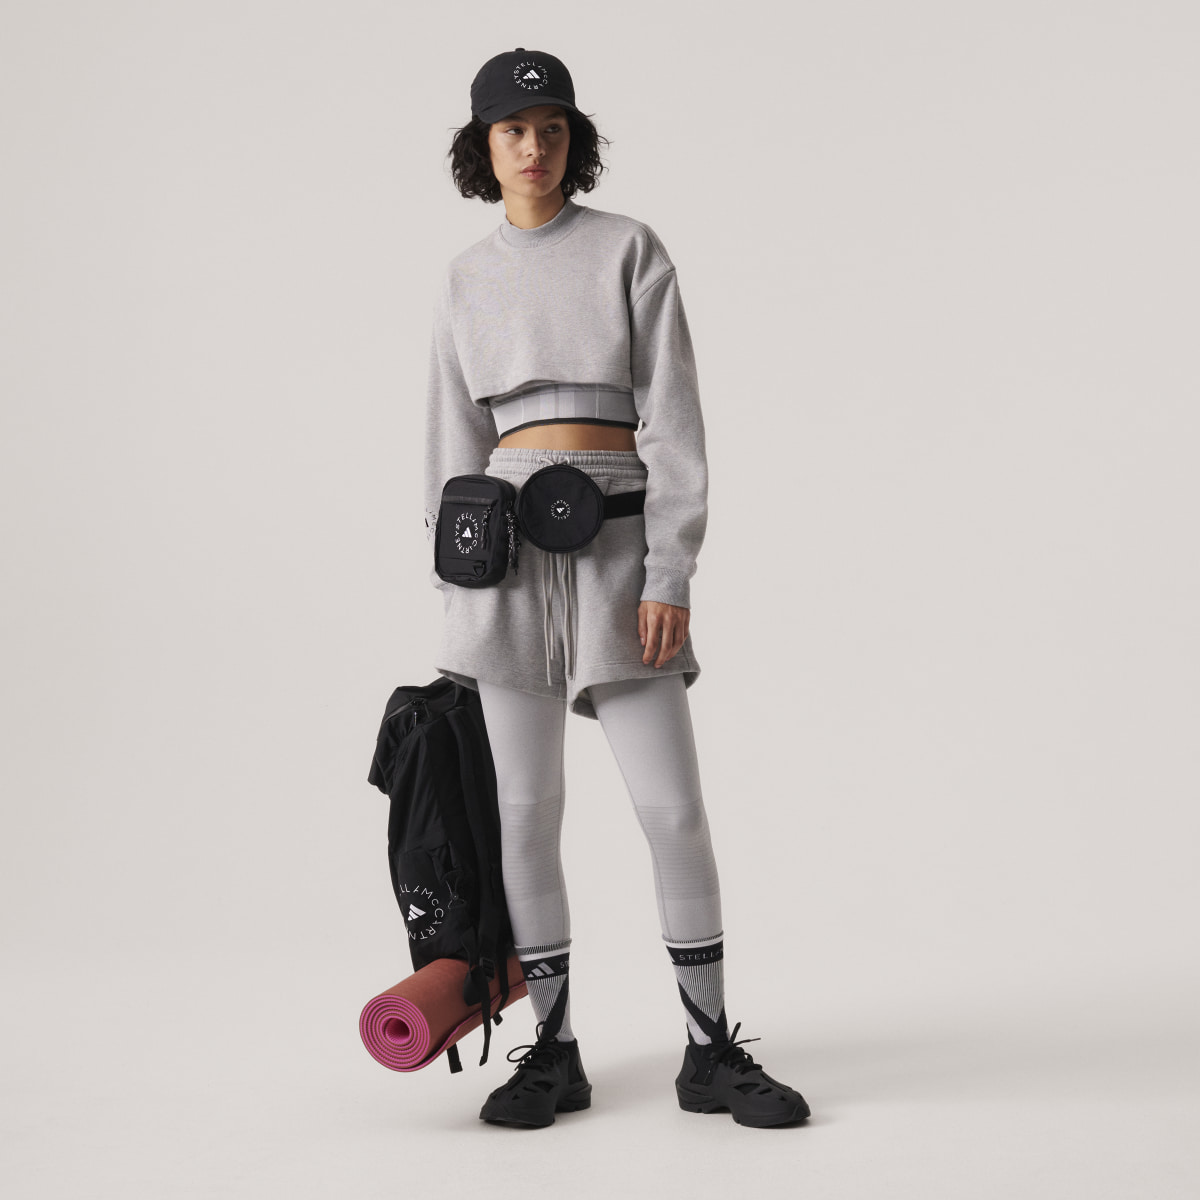 Adidas by Stella McCartney TrueStrength Yoga 7/8 Tight. 7